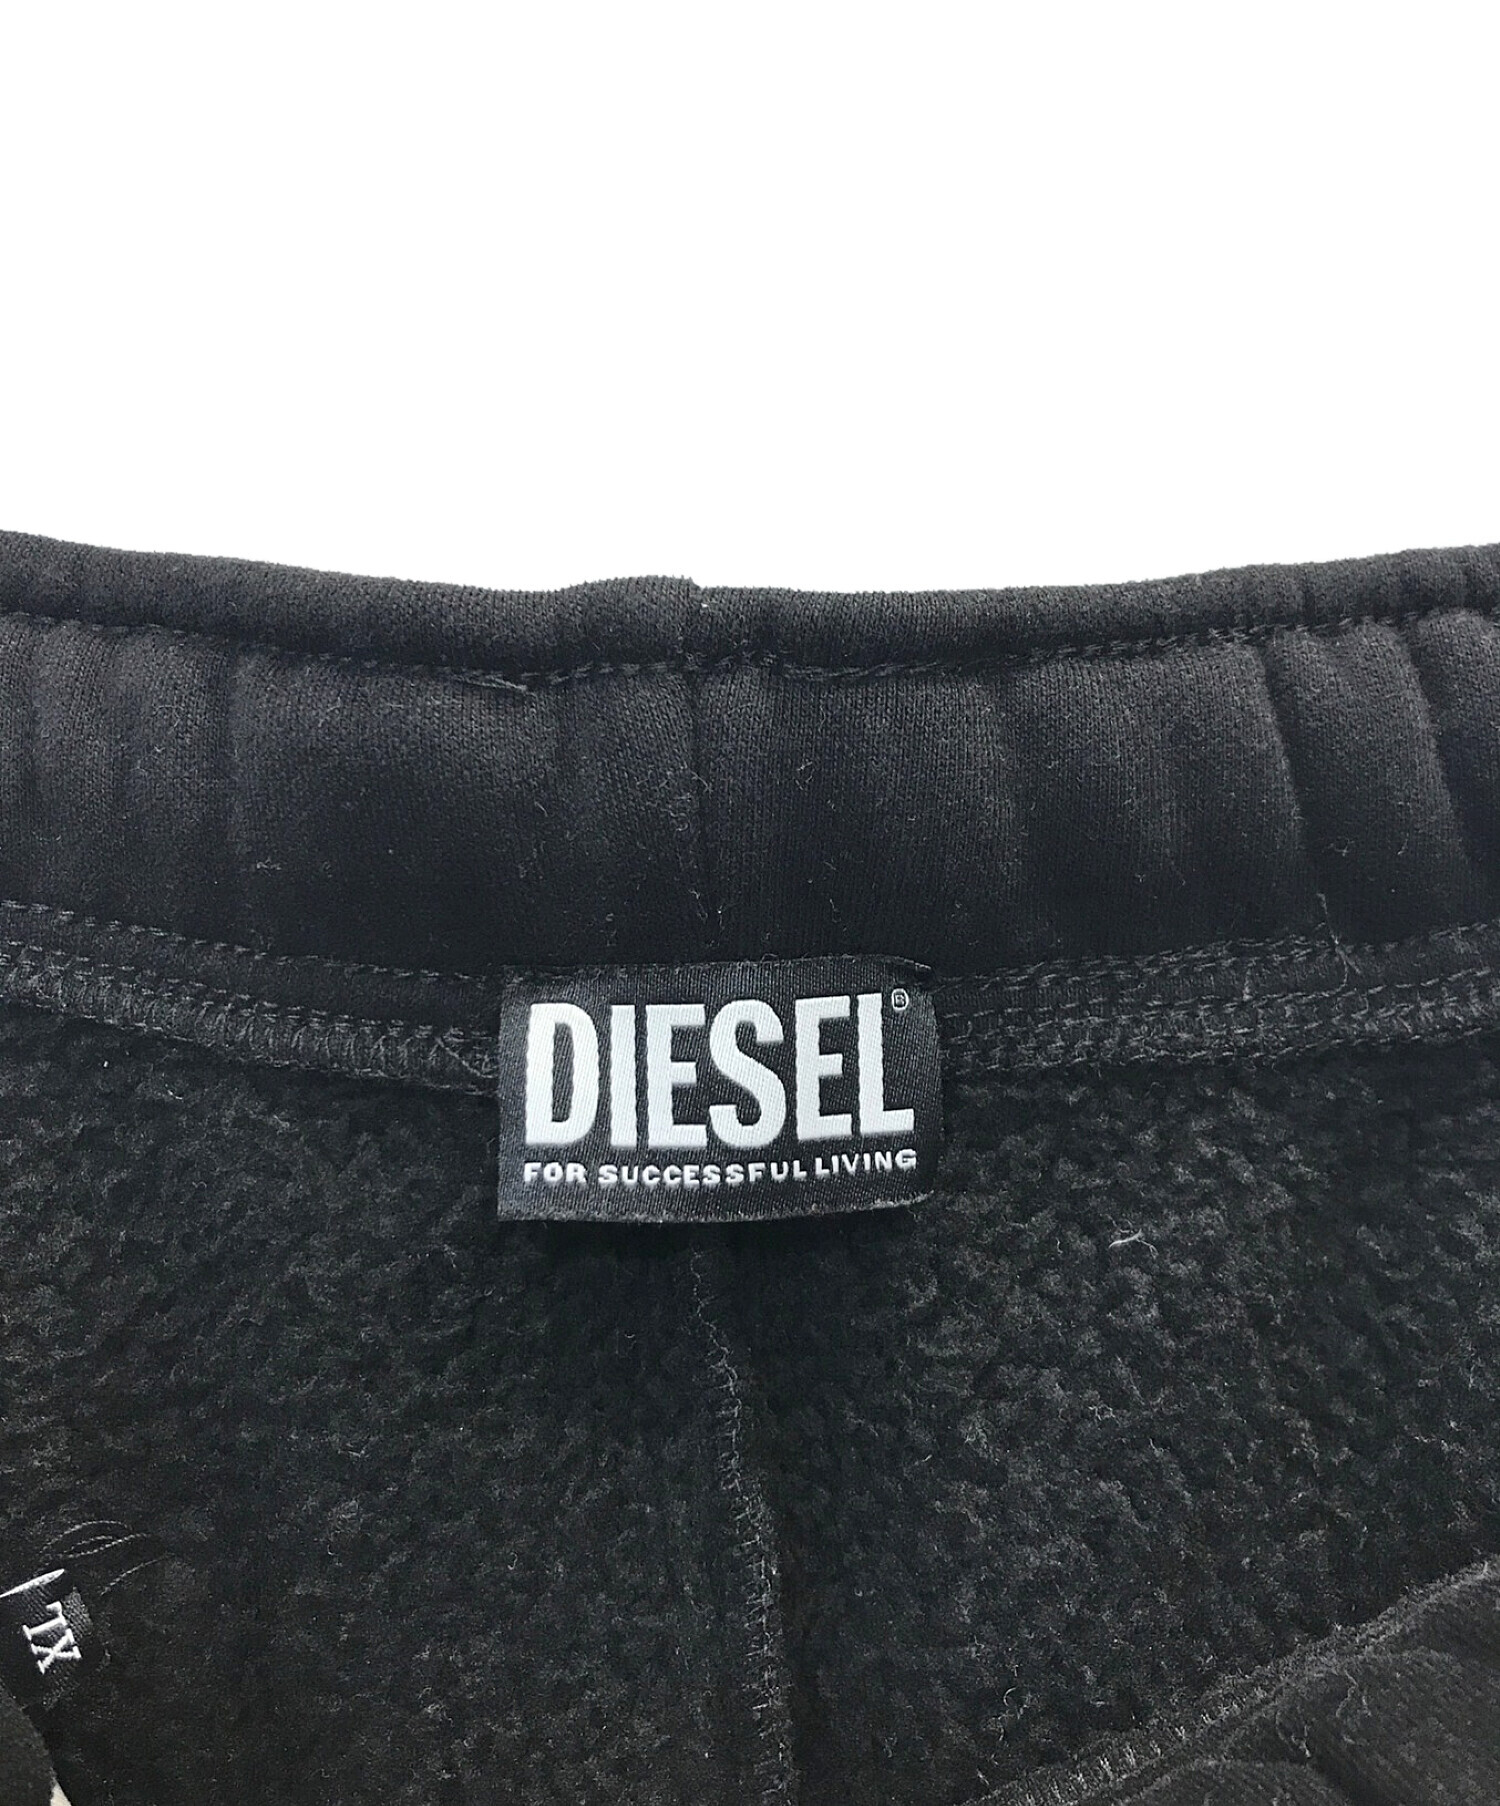 DIESEL (ディーゼル) スウェットパンツ ブラック サイズ:XL